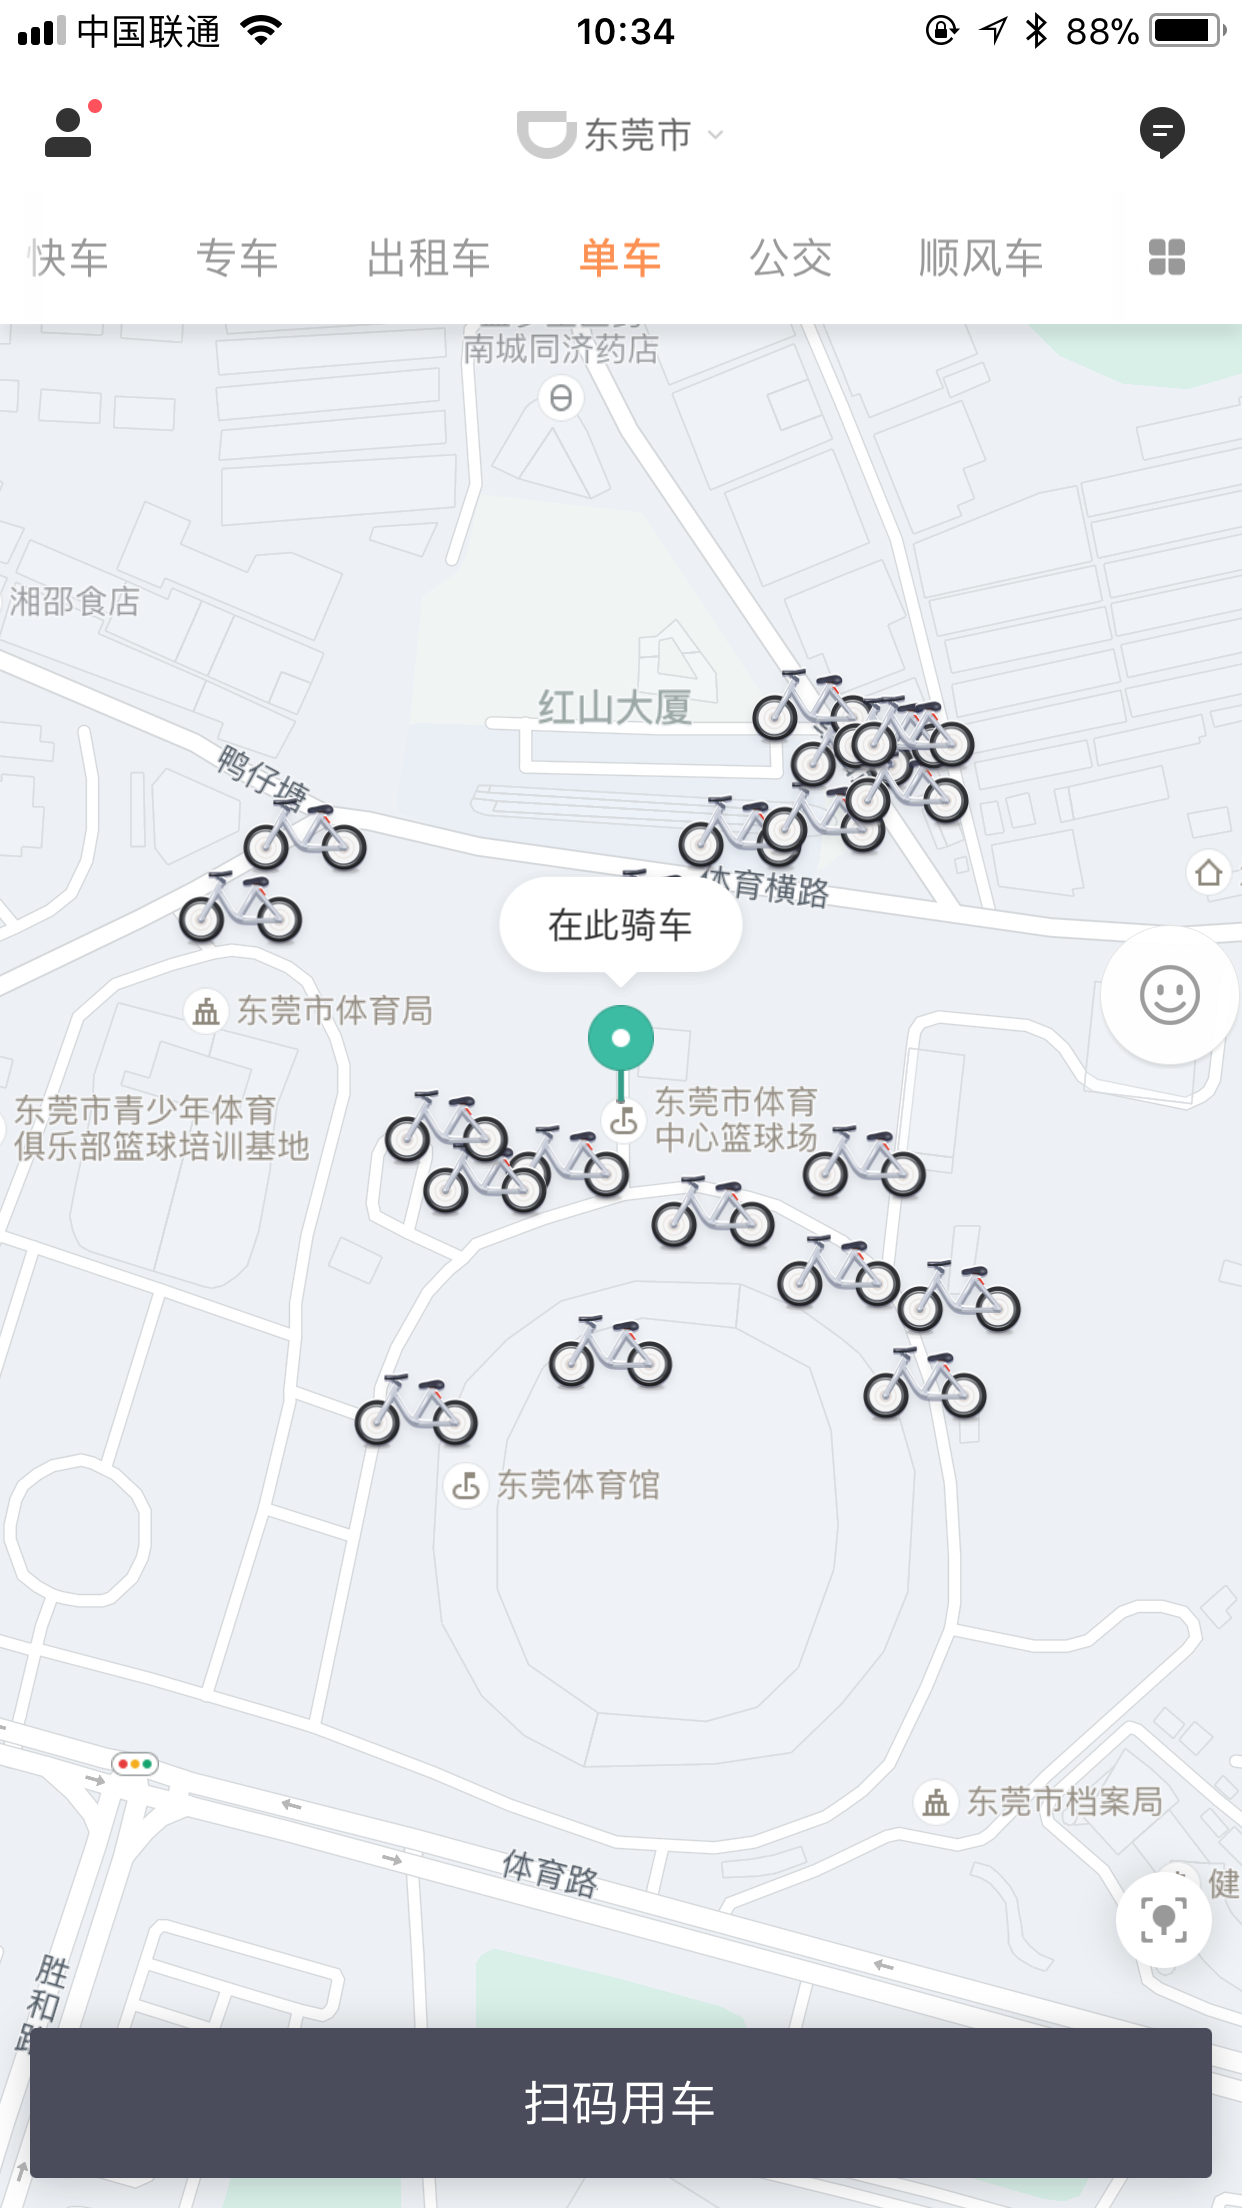 滴滴旗下品牌青桔单车登陆东莞、佛山：用户可免押金骑行   